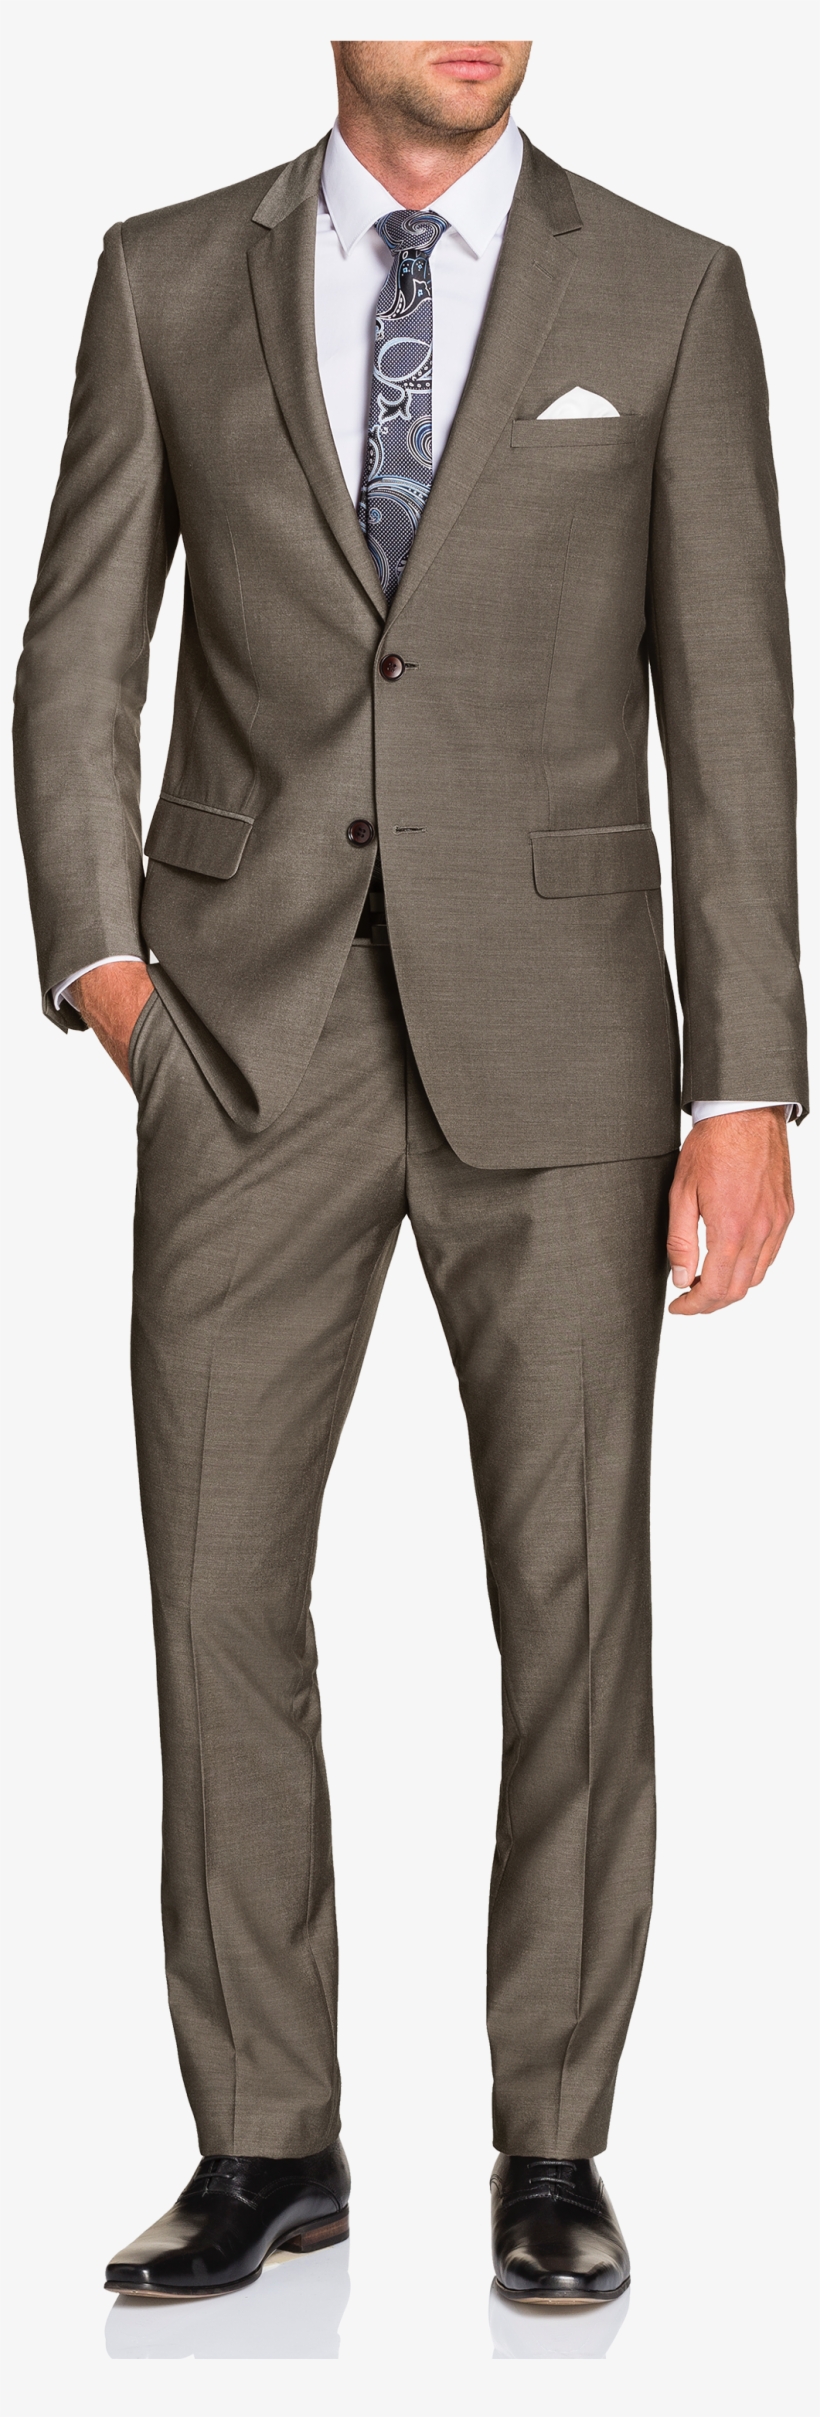 Mocha Falco 2 Button Suit - Bangladeshi Men In Suit, transparent png #8628704